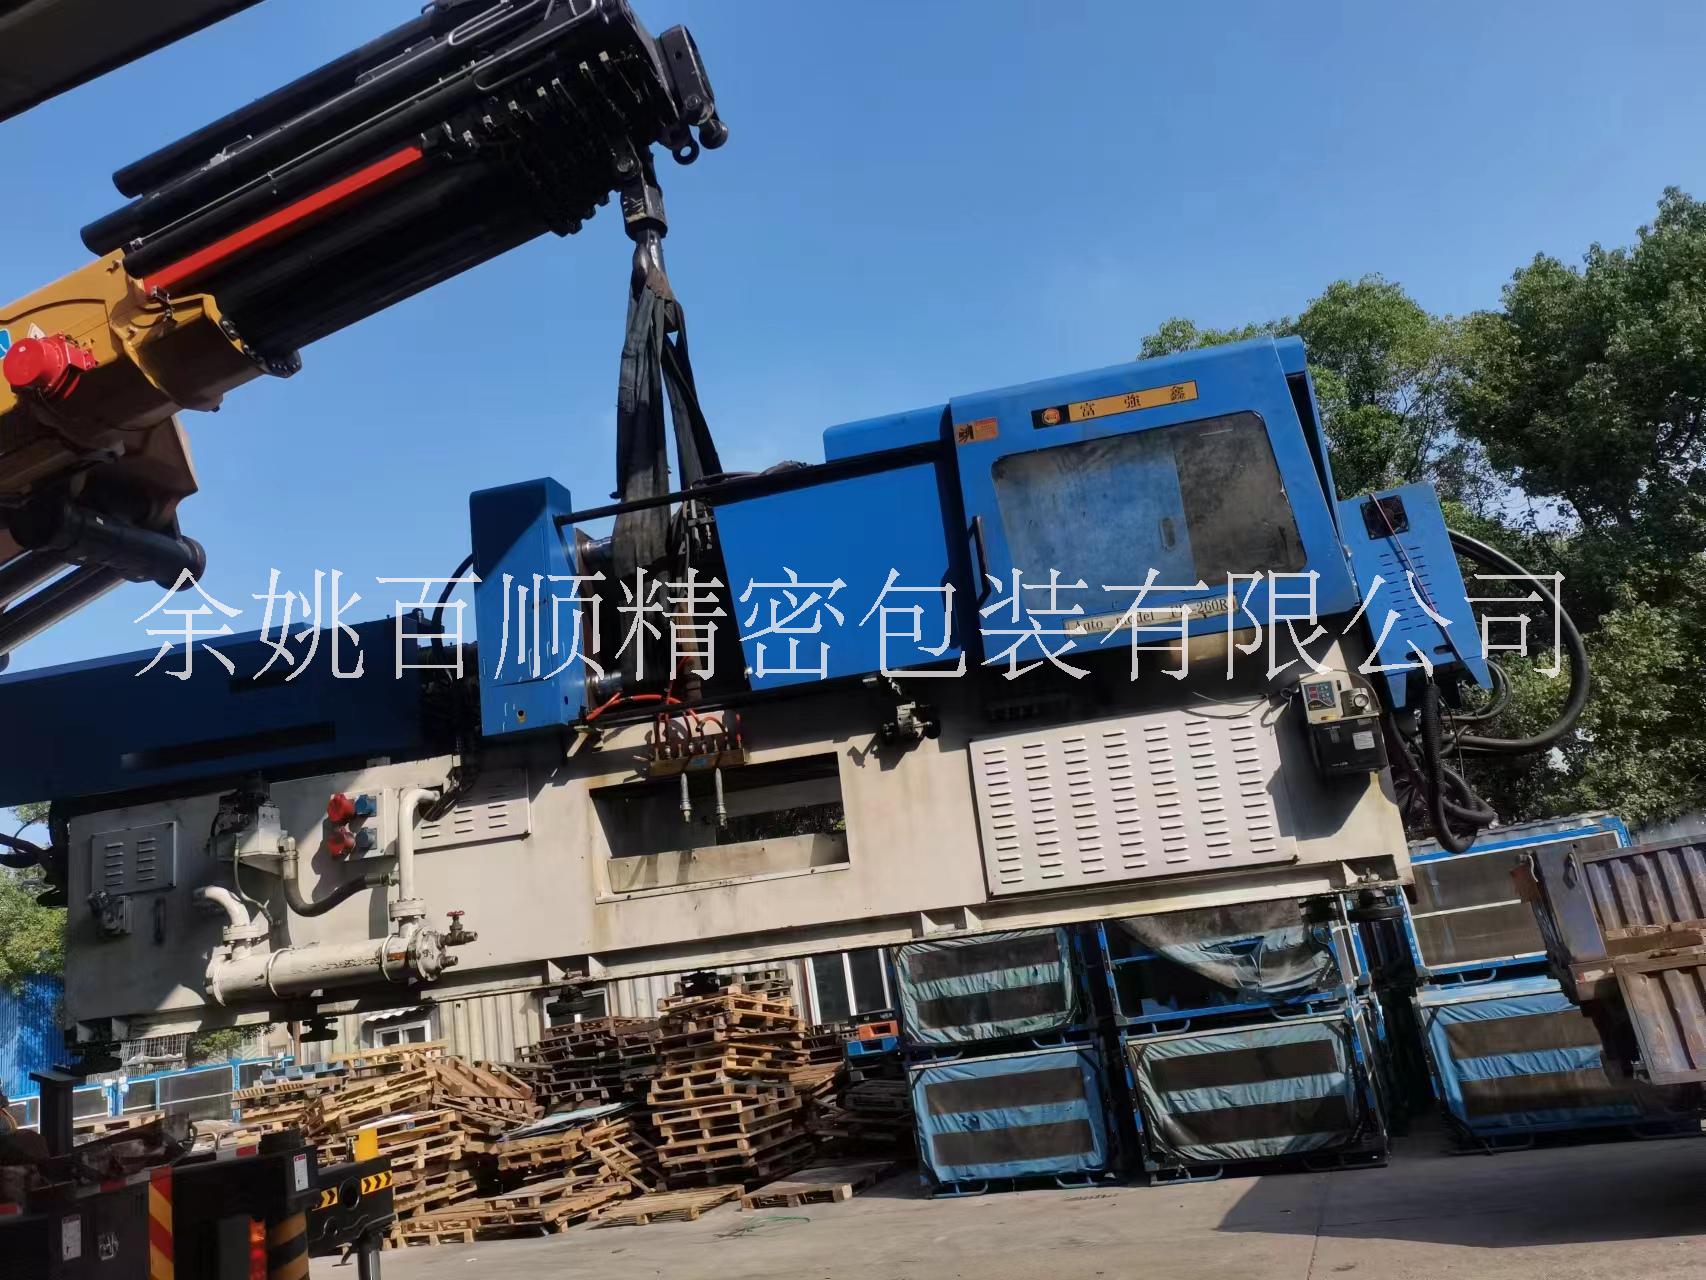 机械设备吊装 机械设备起重包装 浙江机械设备包装厂家15968989698图片